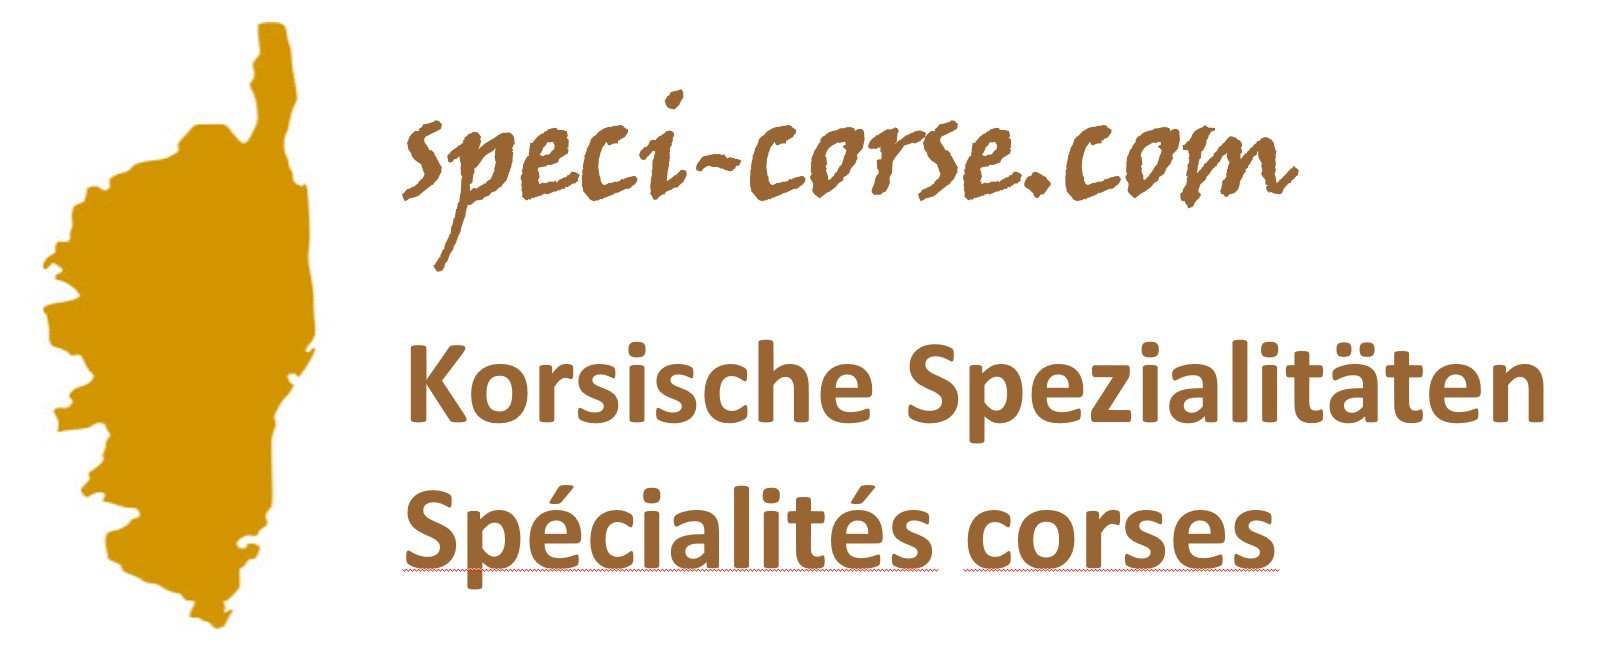 speci-corse.com - Korsische Spezialitäten